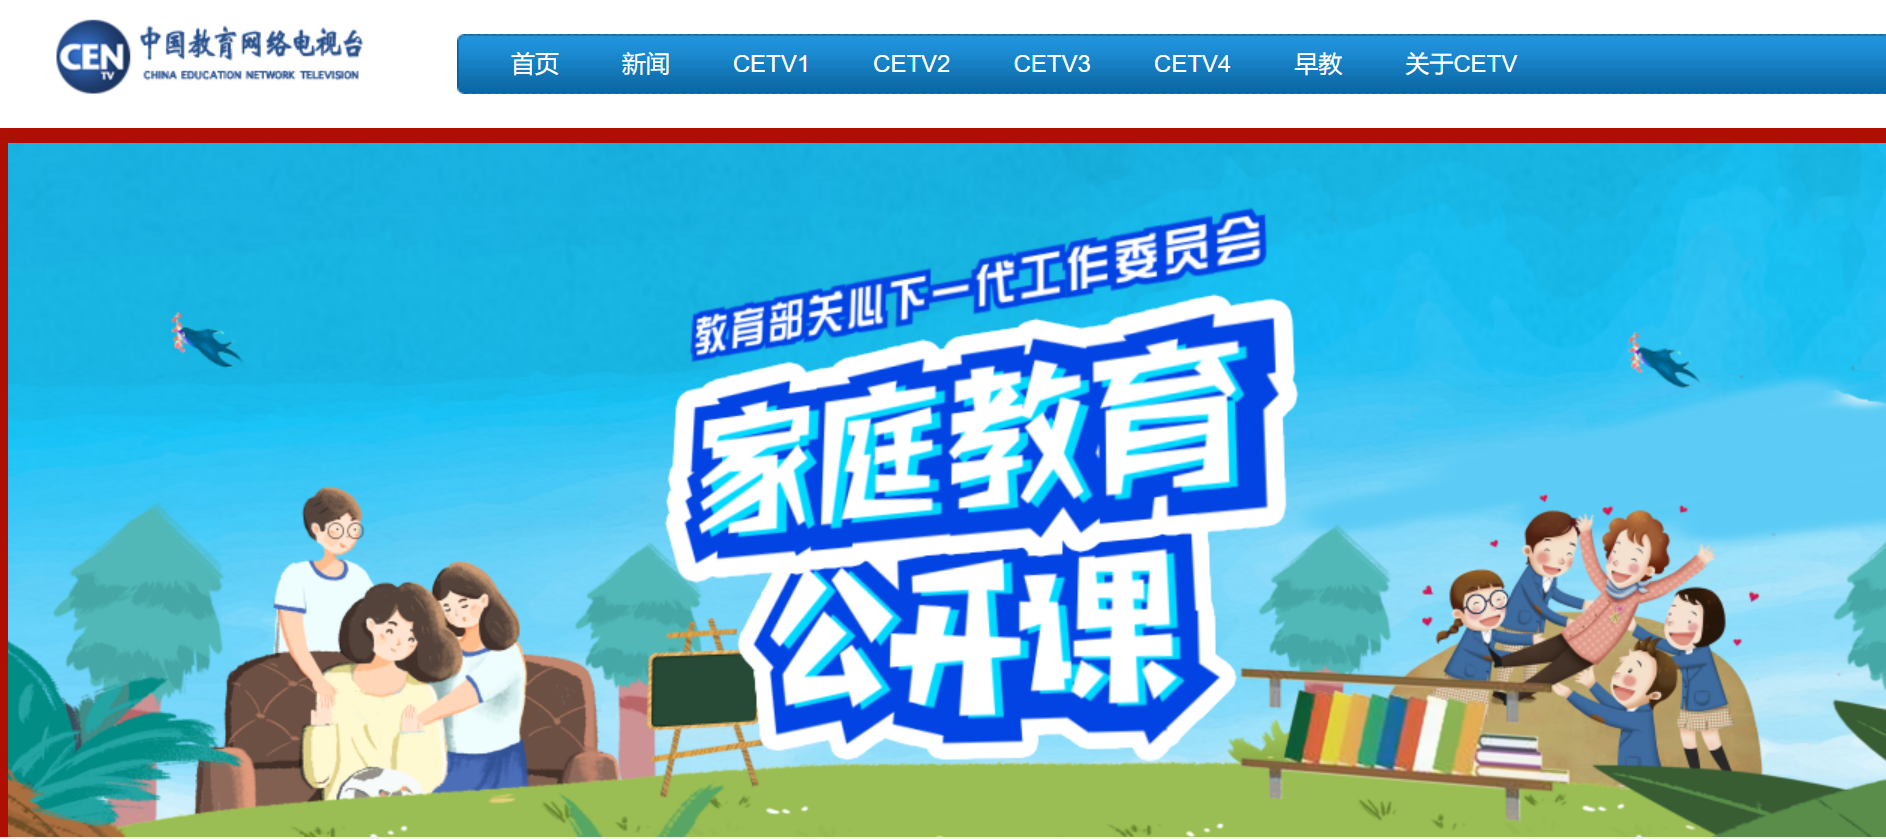 易倍体育app官方最新版下载2022华夏教诲电视台一套(CETV1)直播回放进口